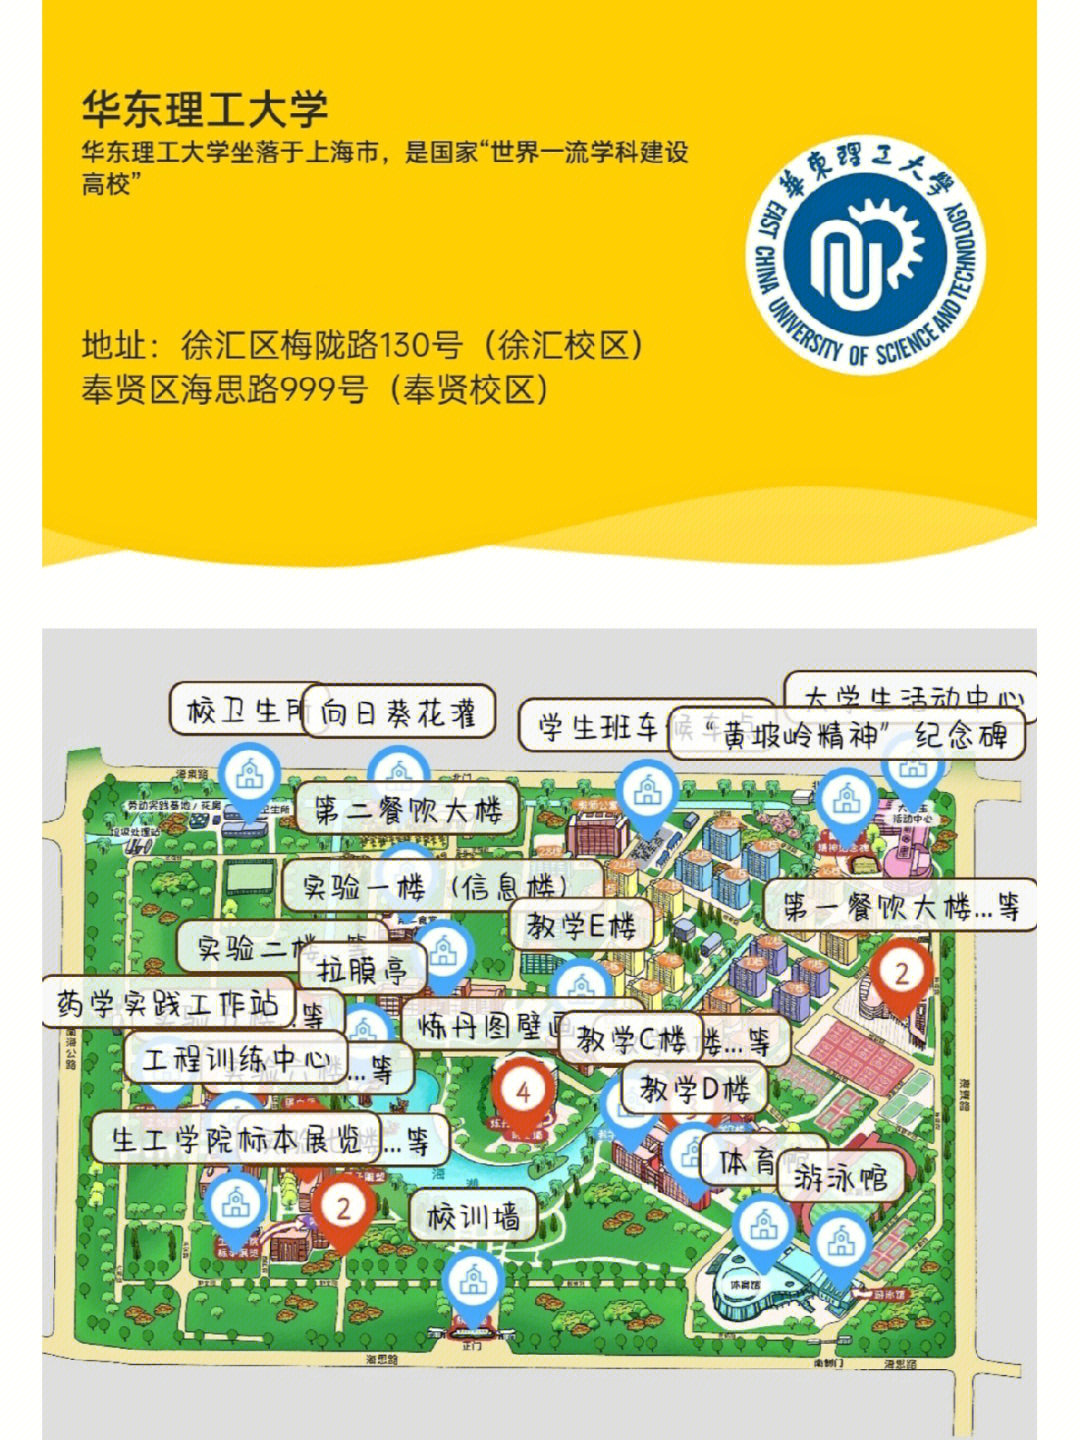 了解一下华东理工大学——小花梨吧78咱们小花梨坐落在上海奉贤区